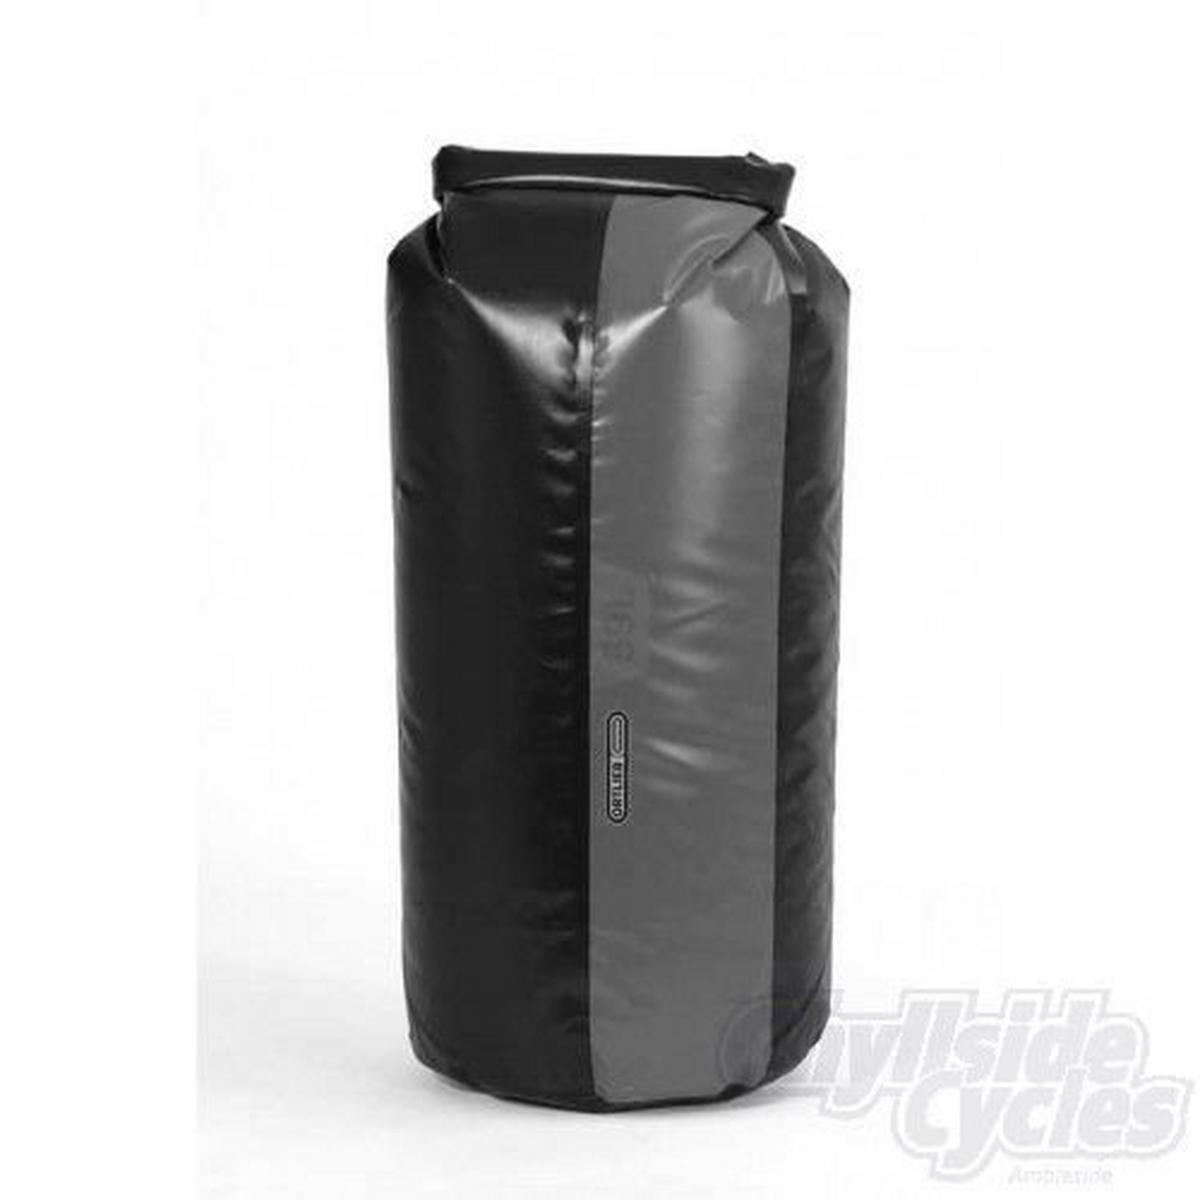 Ortlieb Packsac Drybag Pd350 59l L